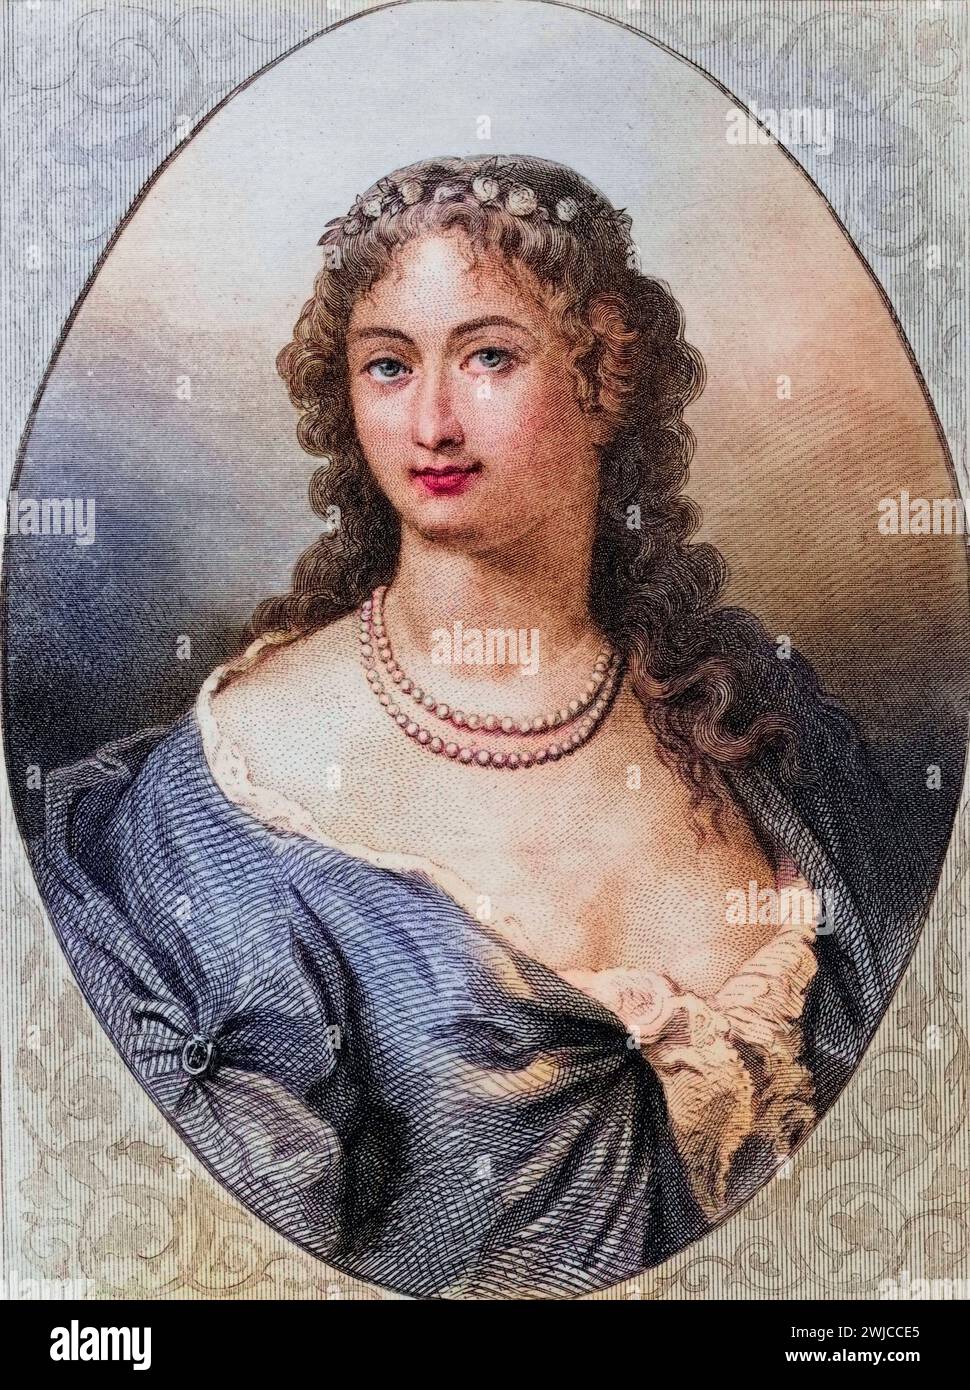 Claudine Alexandrine Guerin, Marquise de Tencin geb. 27. April 1682 in Grenoble gest. 4. Dezember 1749 in Paris war eine bekannte französische Salonni Stock Photo